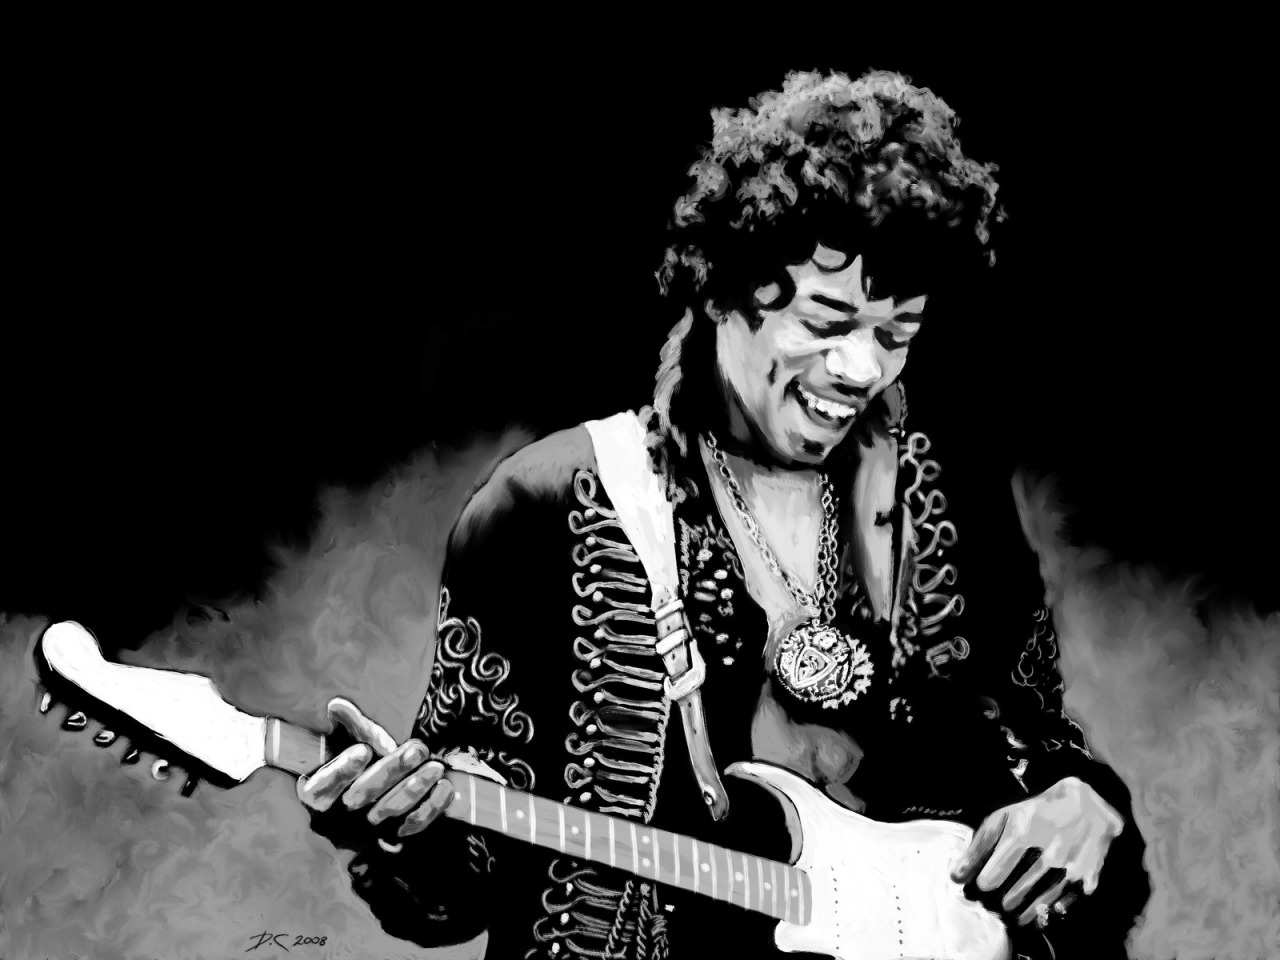 Jimi Hendrix Res: 1280x960 / Size:179kb. Views: 16462